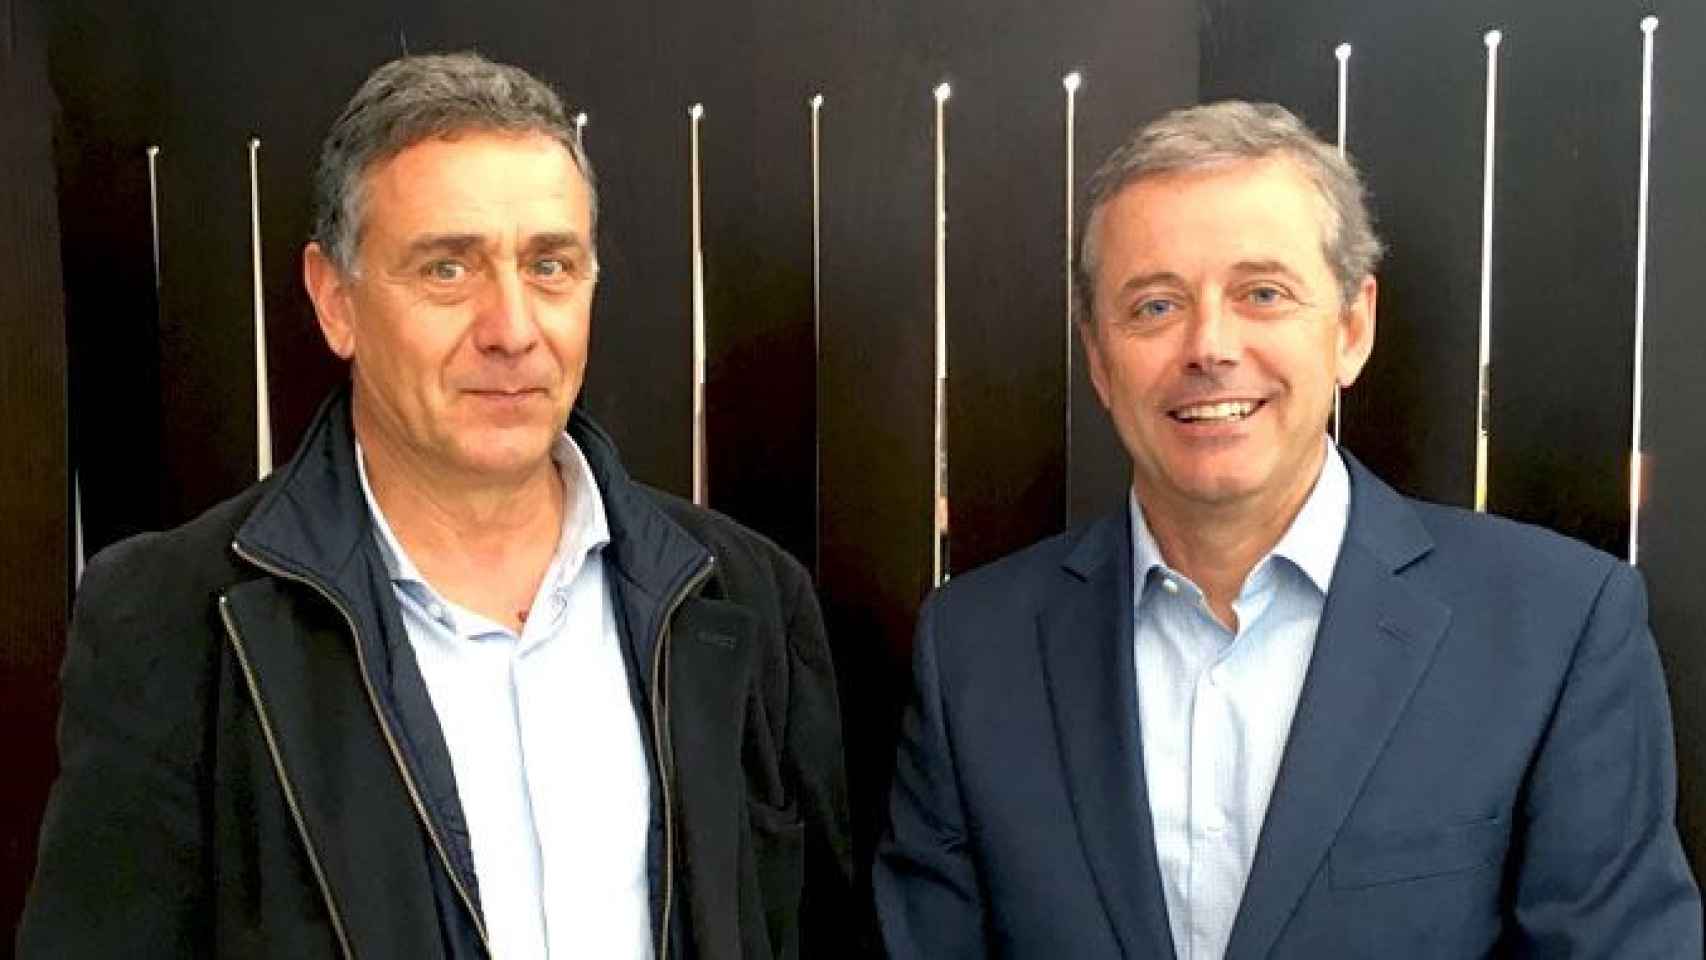 Josep Puxeu (i), director general de Anfabra, junto al presidente de la patronal de las bebidas refrescantes, John Rigau, en la edición de 2018 de la feria Alimentaria / CG